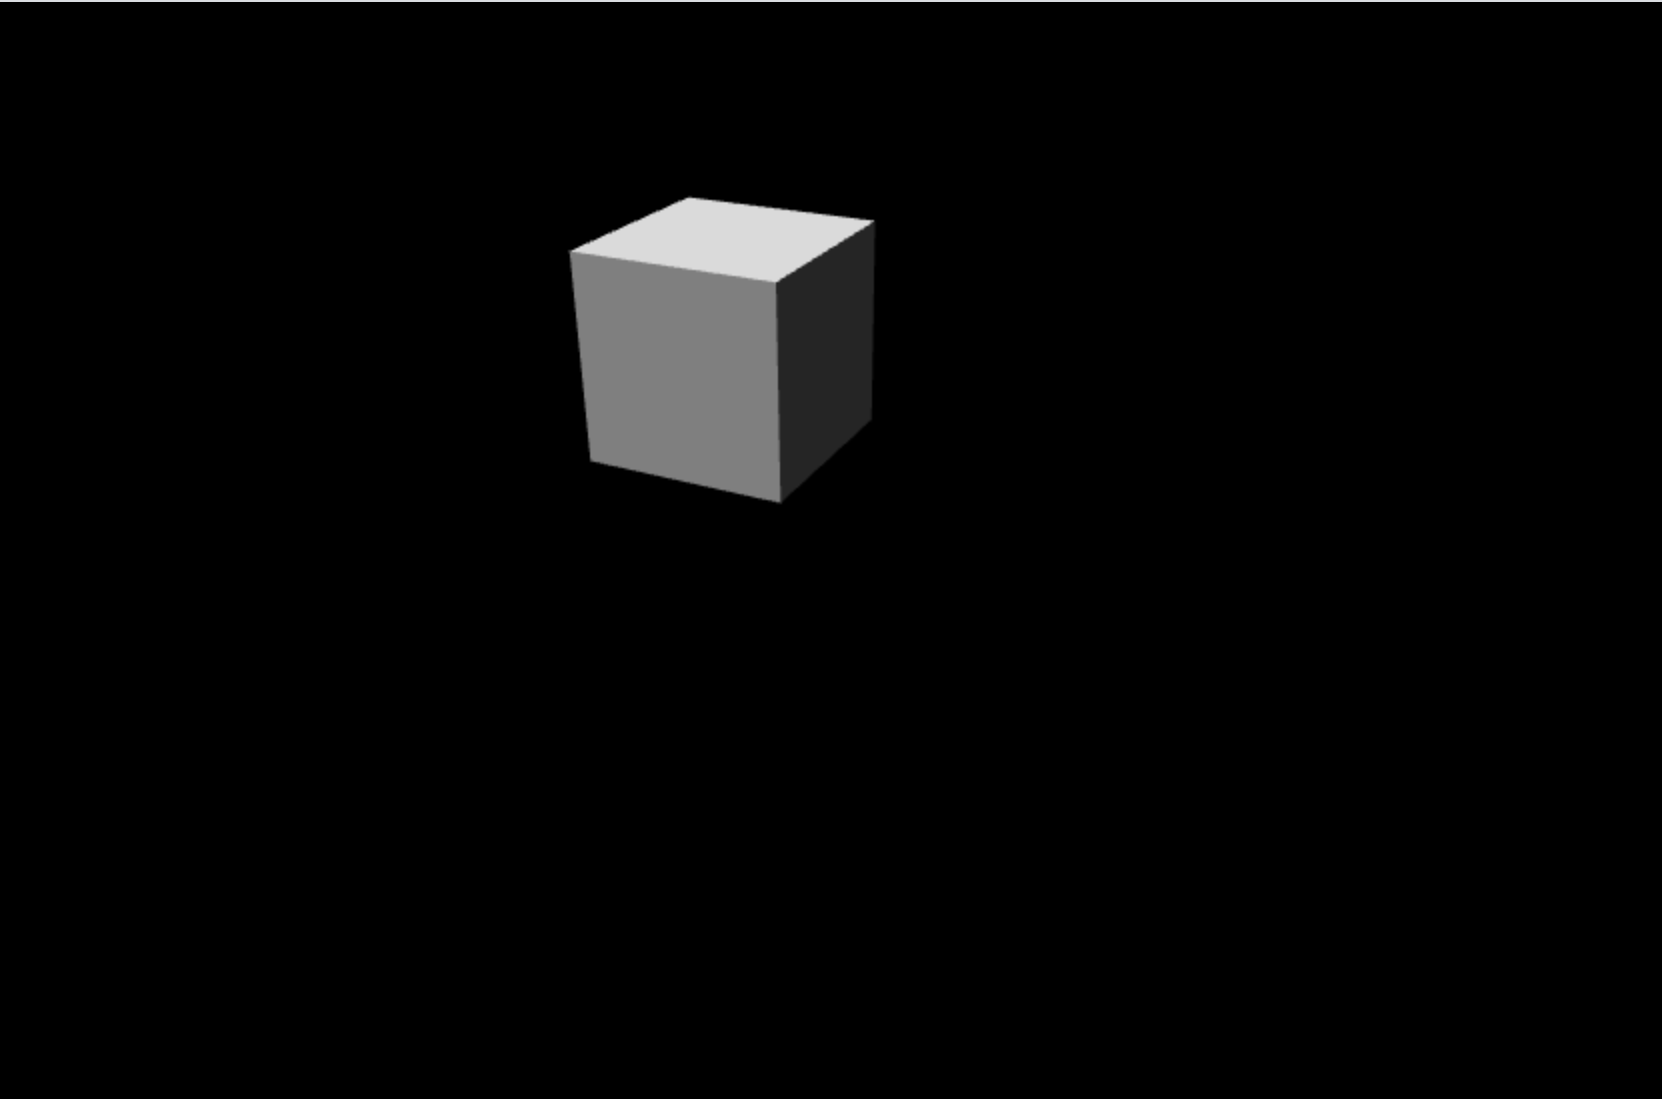 Escena básica con cubo